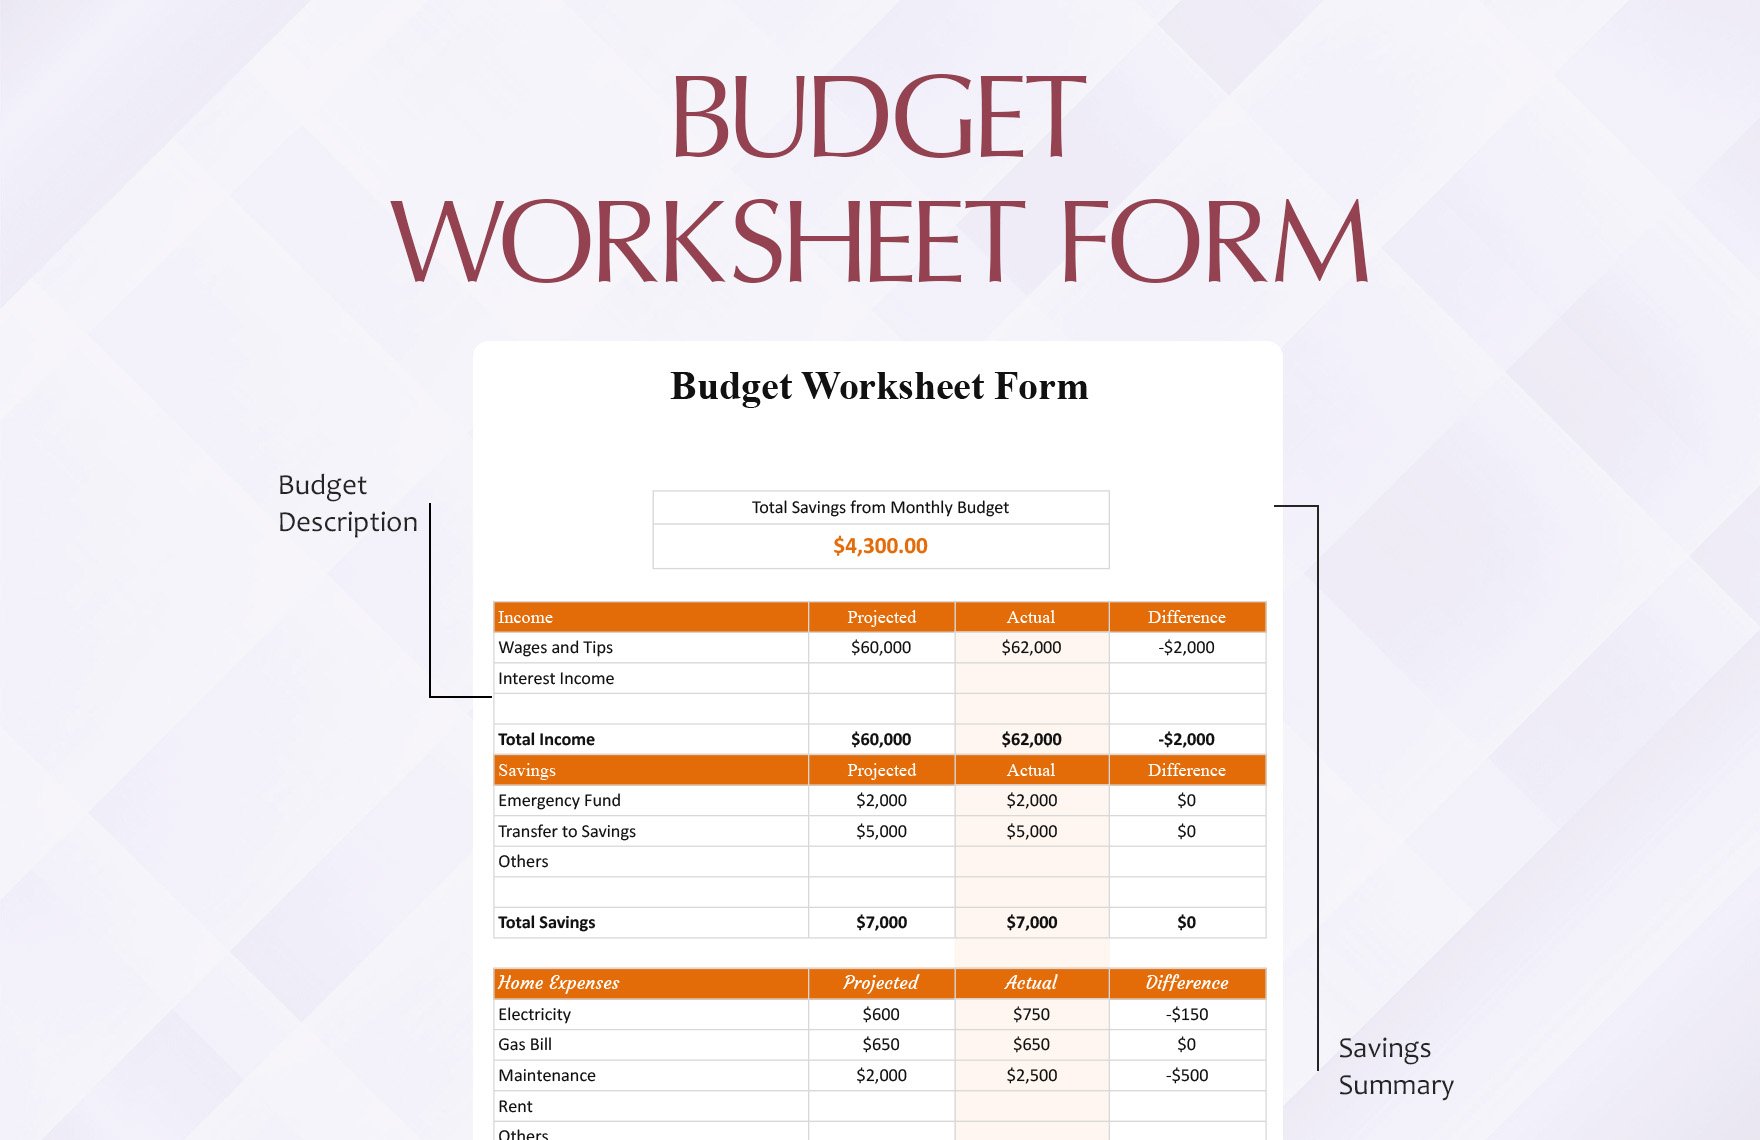 Budget Worksheet Form Instructions